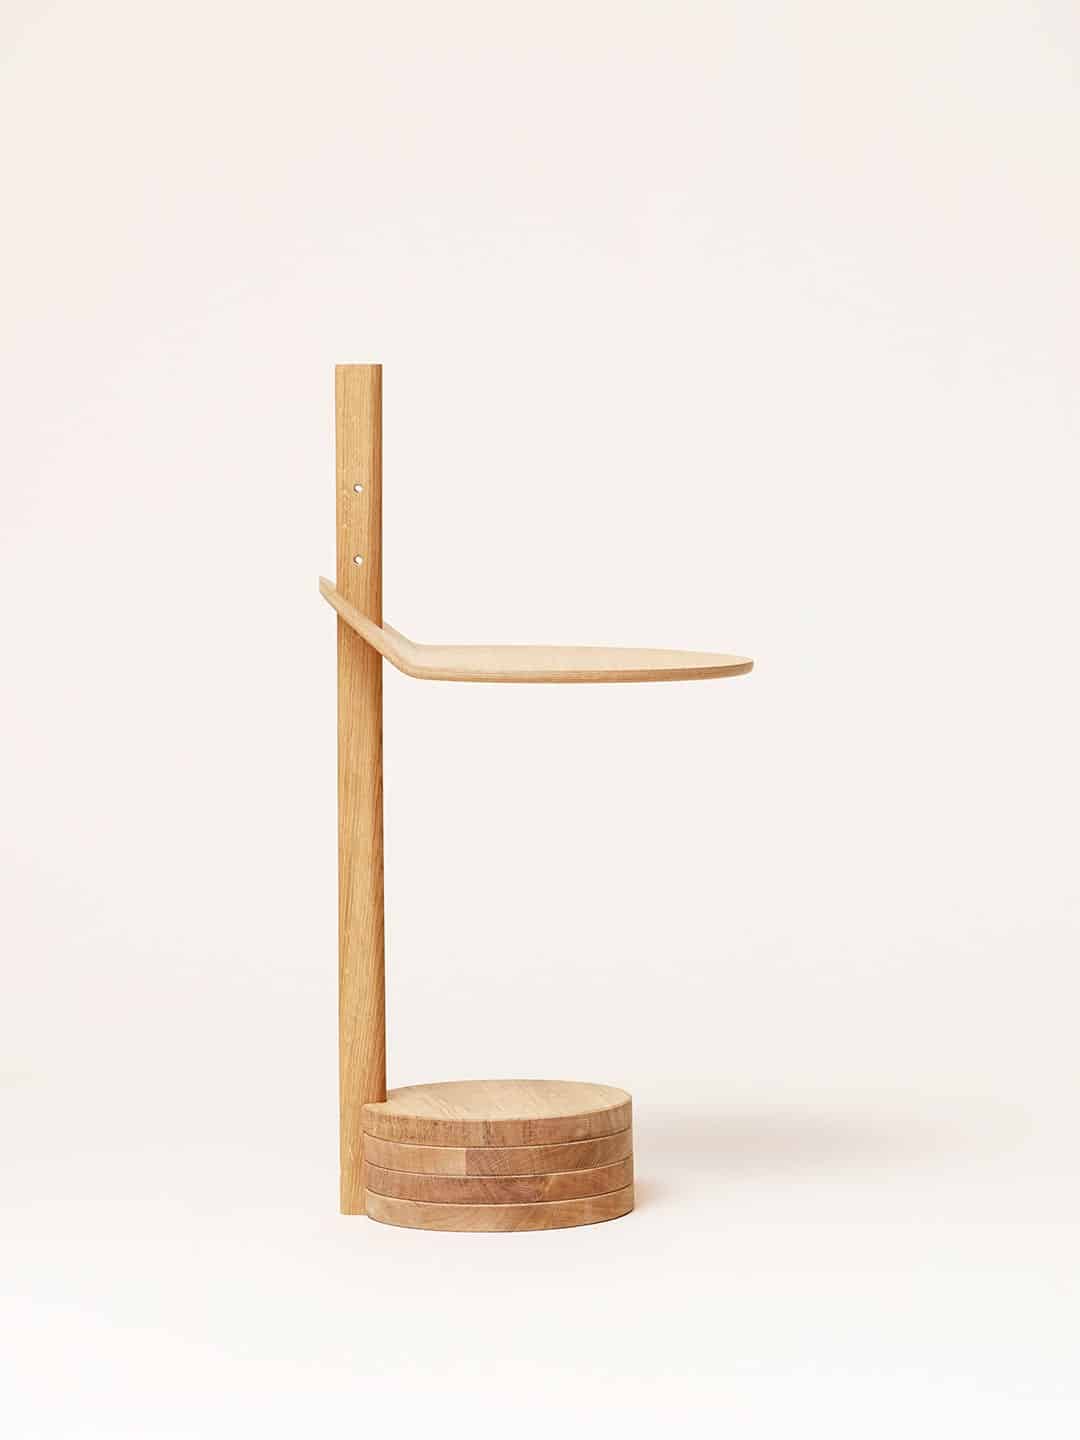 Нижнее положение столешницы деревянного стола Form&Refine Stilk